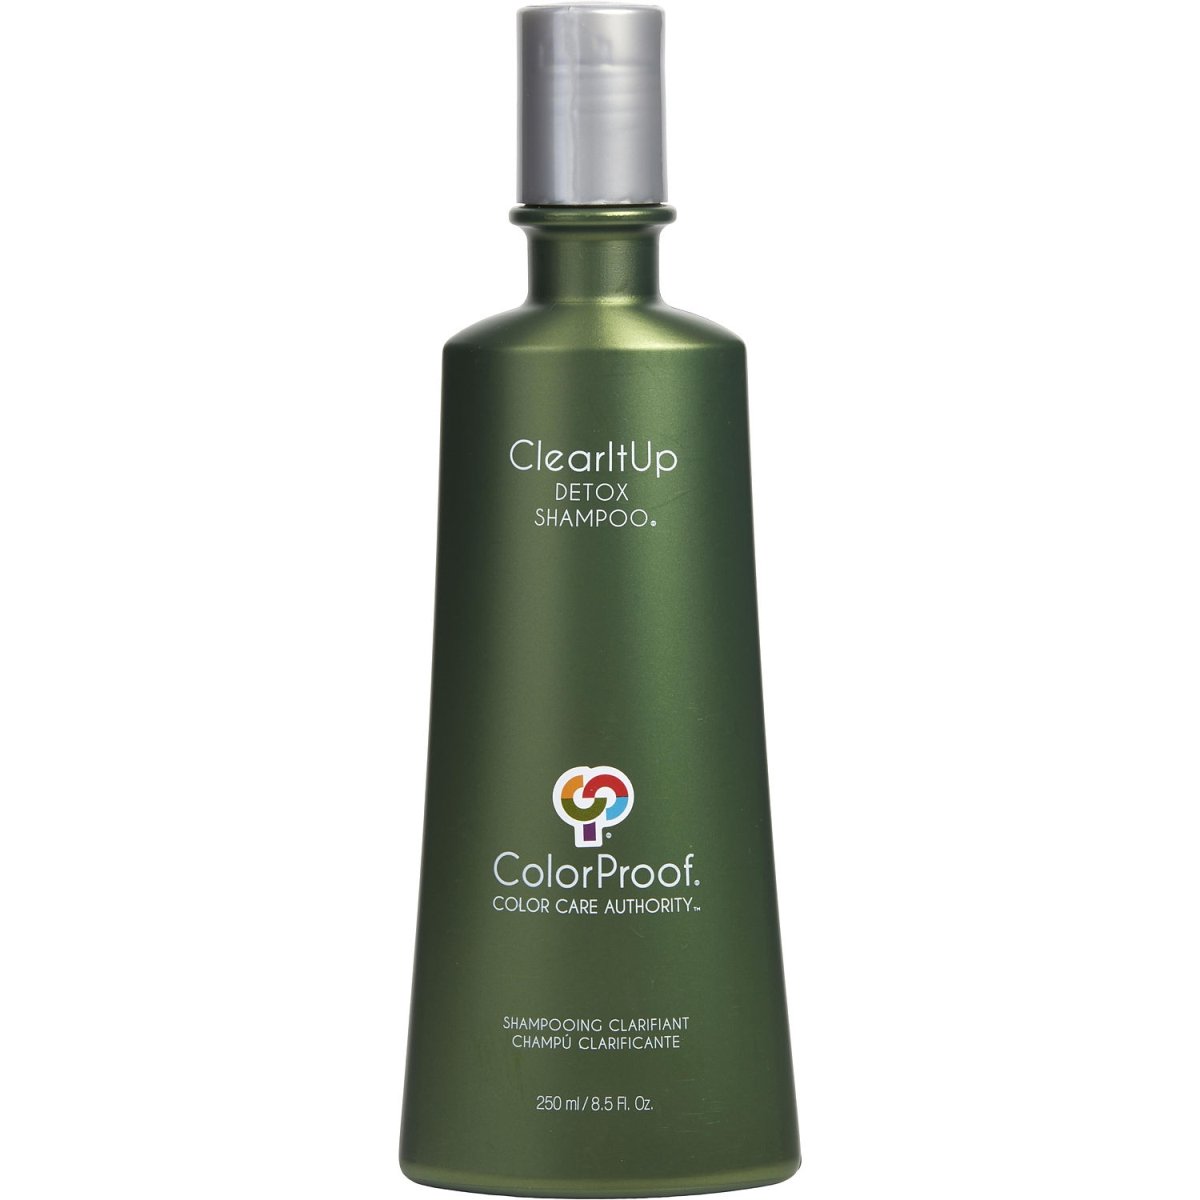 344022 8.5 Oz Unisex Clearitup Detox Hair Shampoo